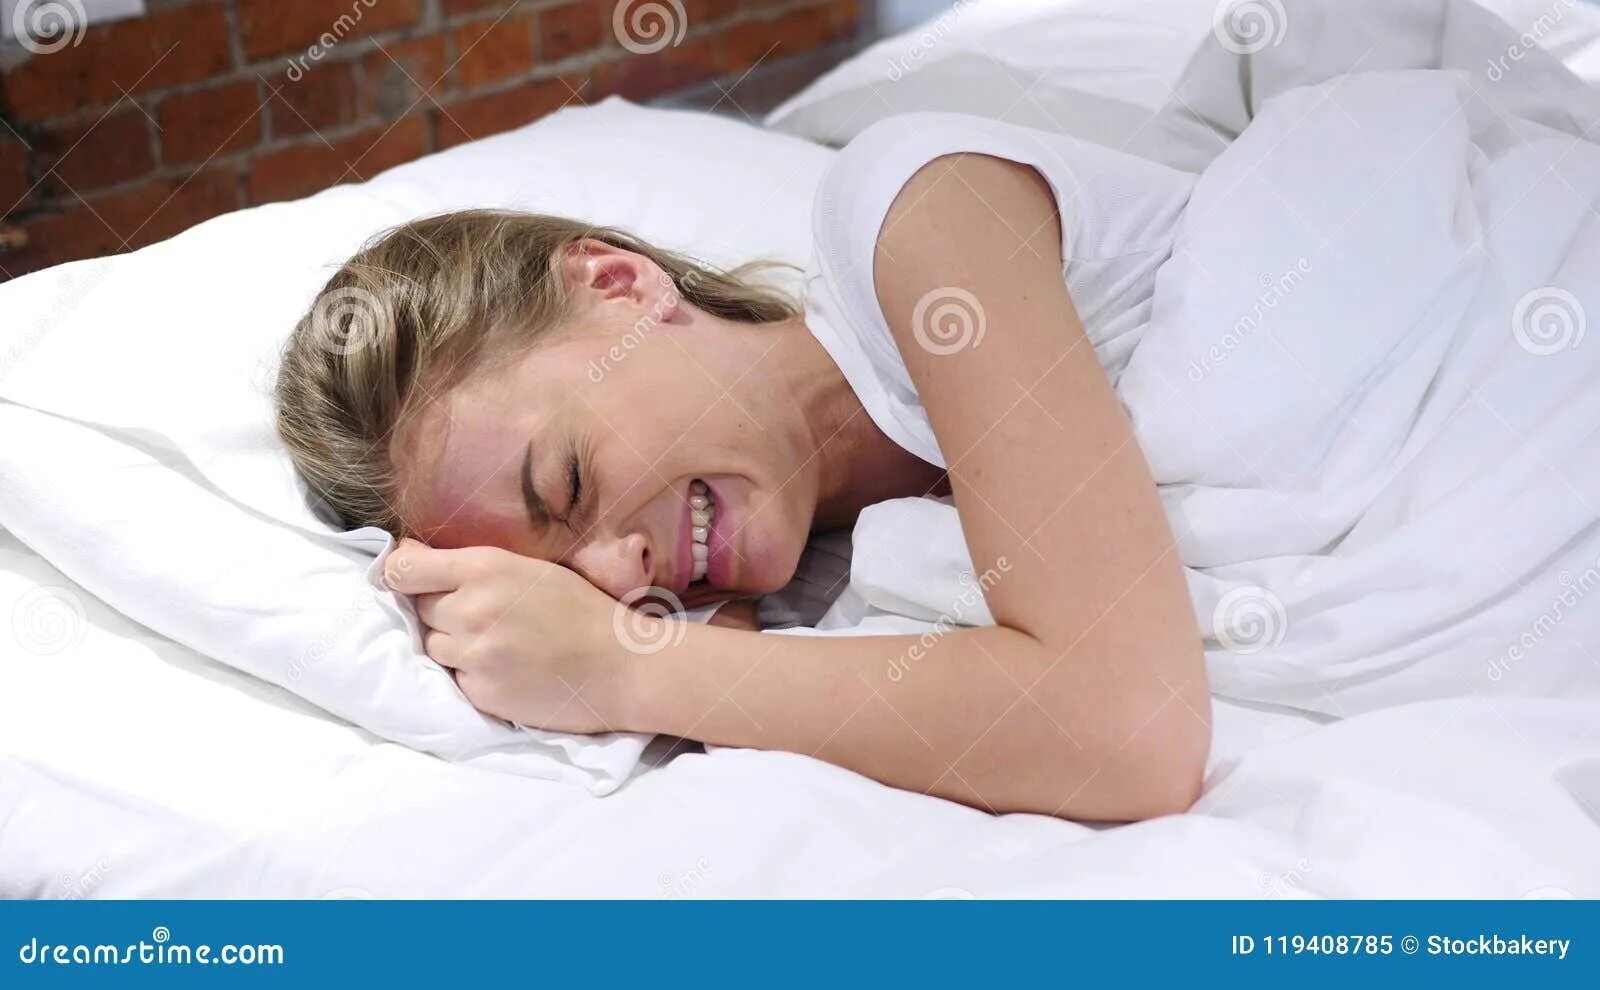 Плач в подушку. Женщина лежит в постели. Плачет в подушку. Заплатить сон